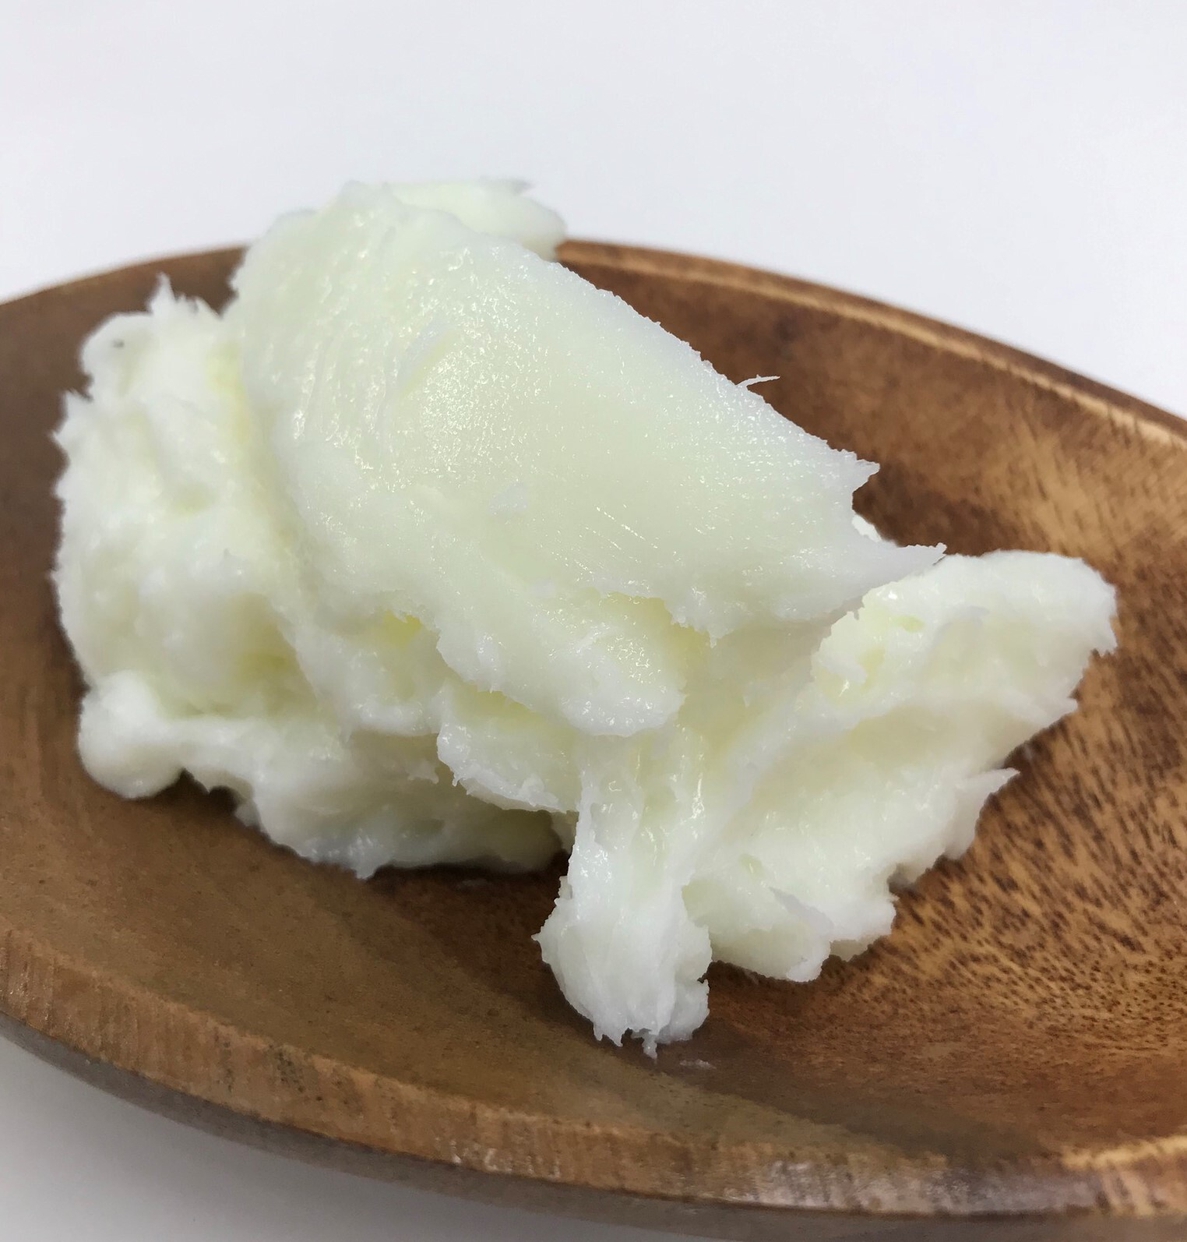 E-CE(エーチェ) 8種類の精油と濃厚シアバターのオーガニッククリームの商品画像サムネ12 